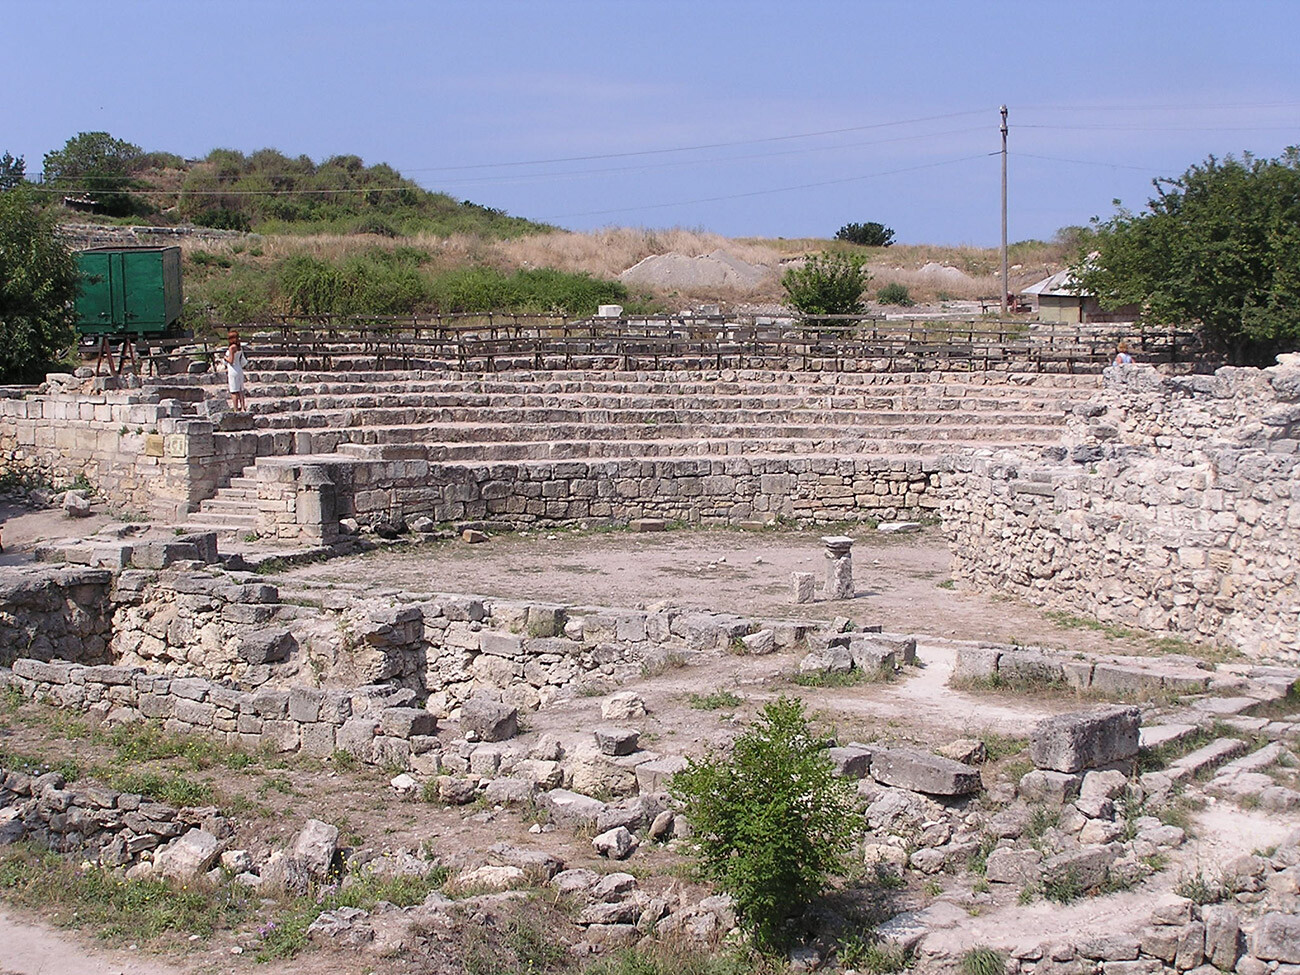 El antiguo teatro de Chersonesos

